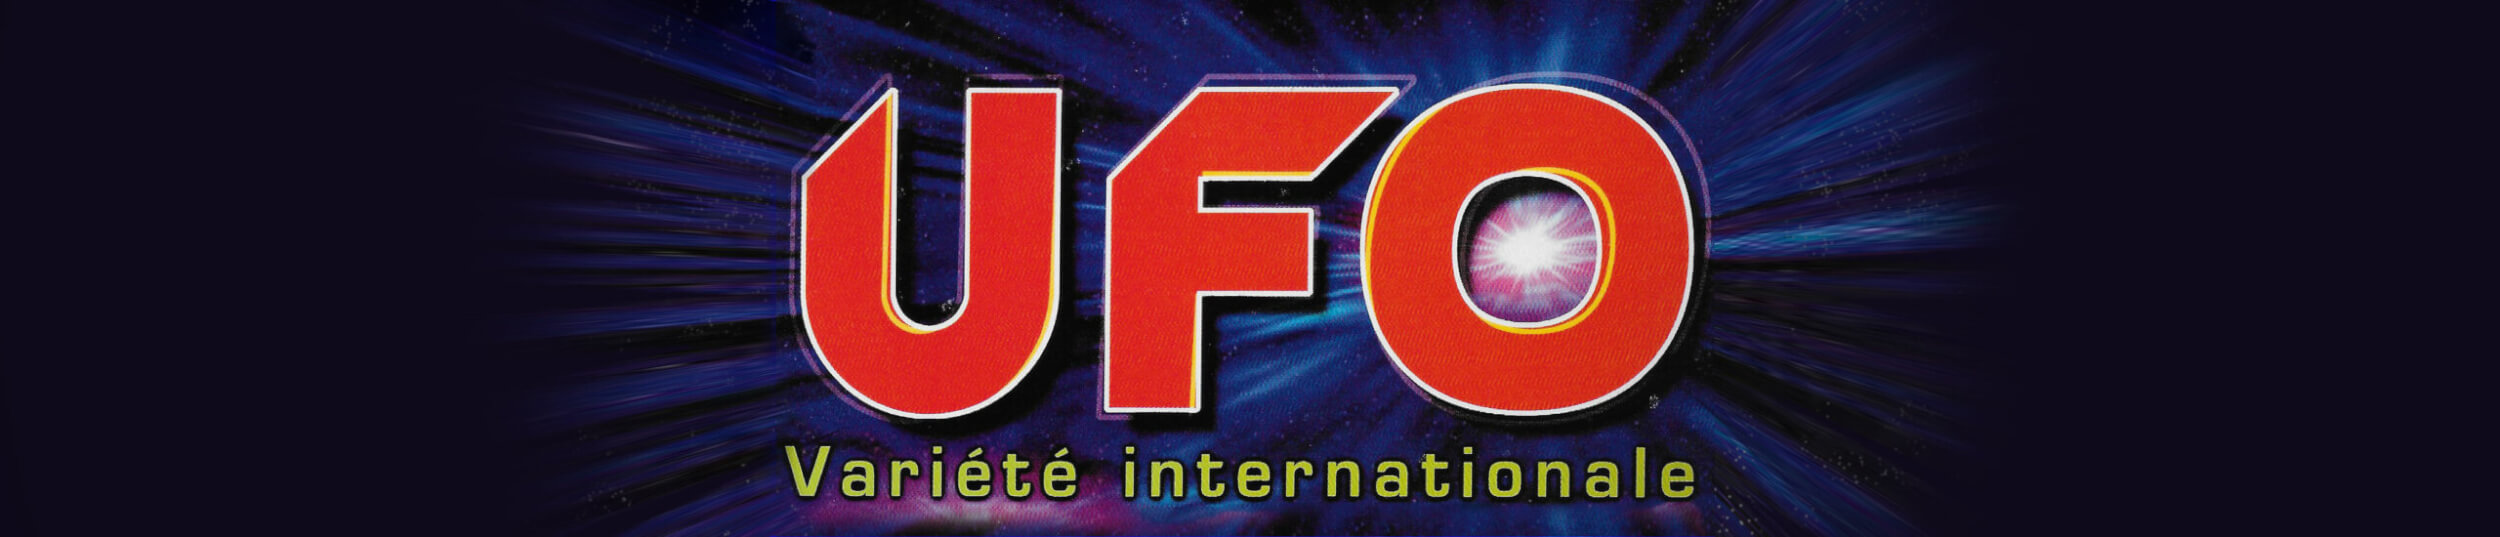 Orchestre UFO - Site historique